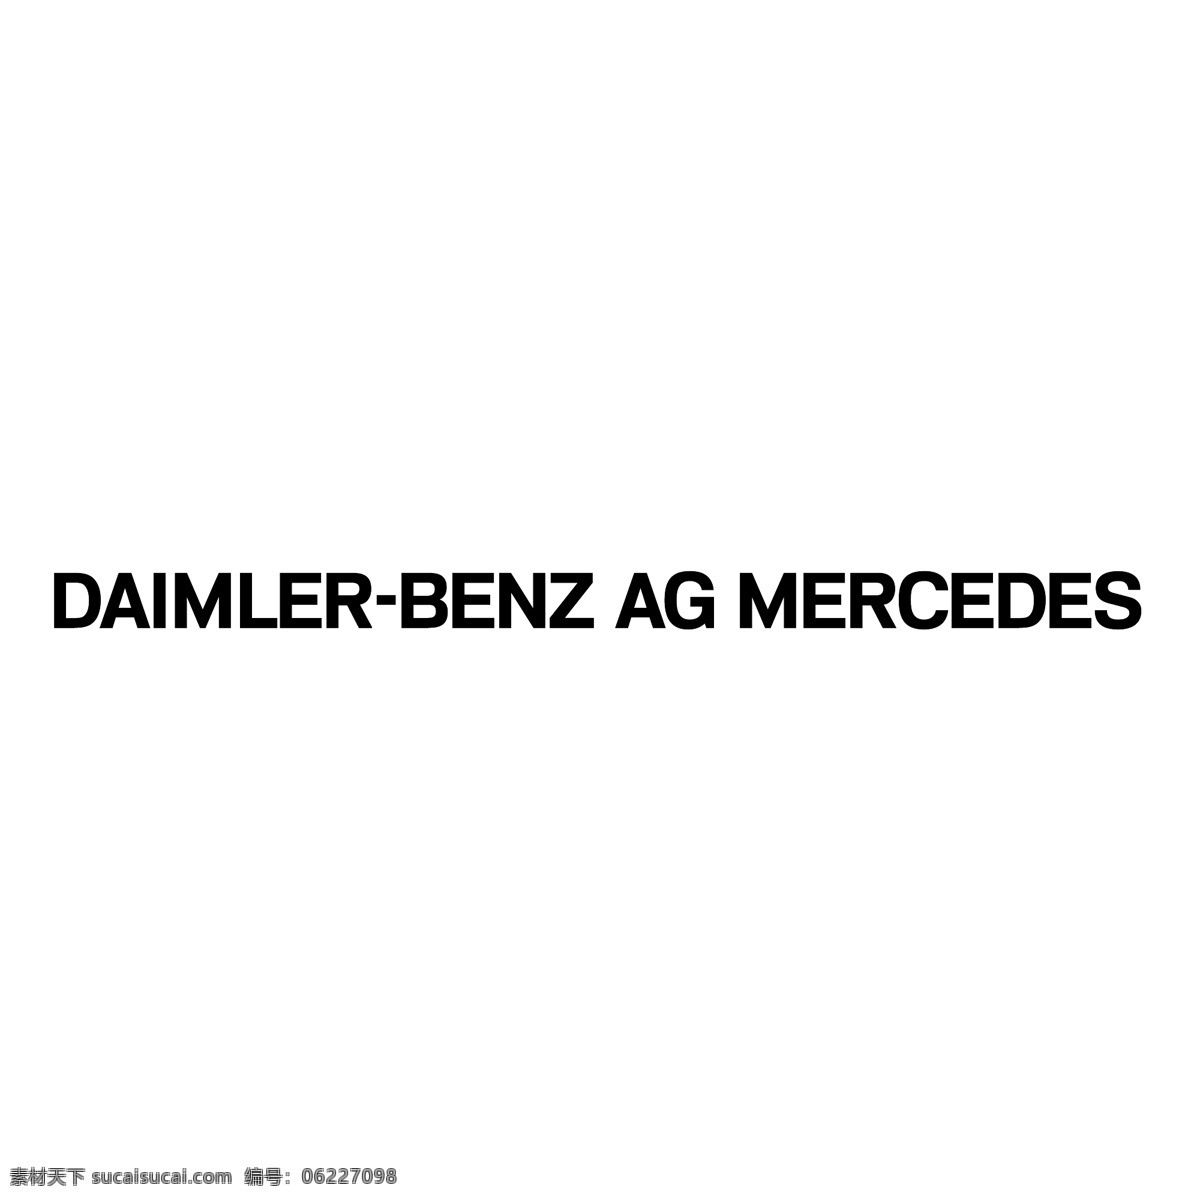 戴姆勒 奔驰公司 梅 赛 德斯 矢量标志下载 免费矢量标识 商标 品牌标识 标识 矢量 免费 品牌 公司 白色